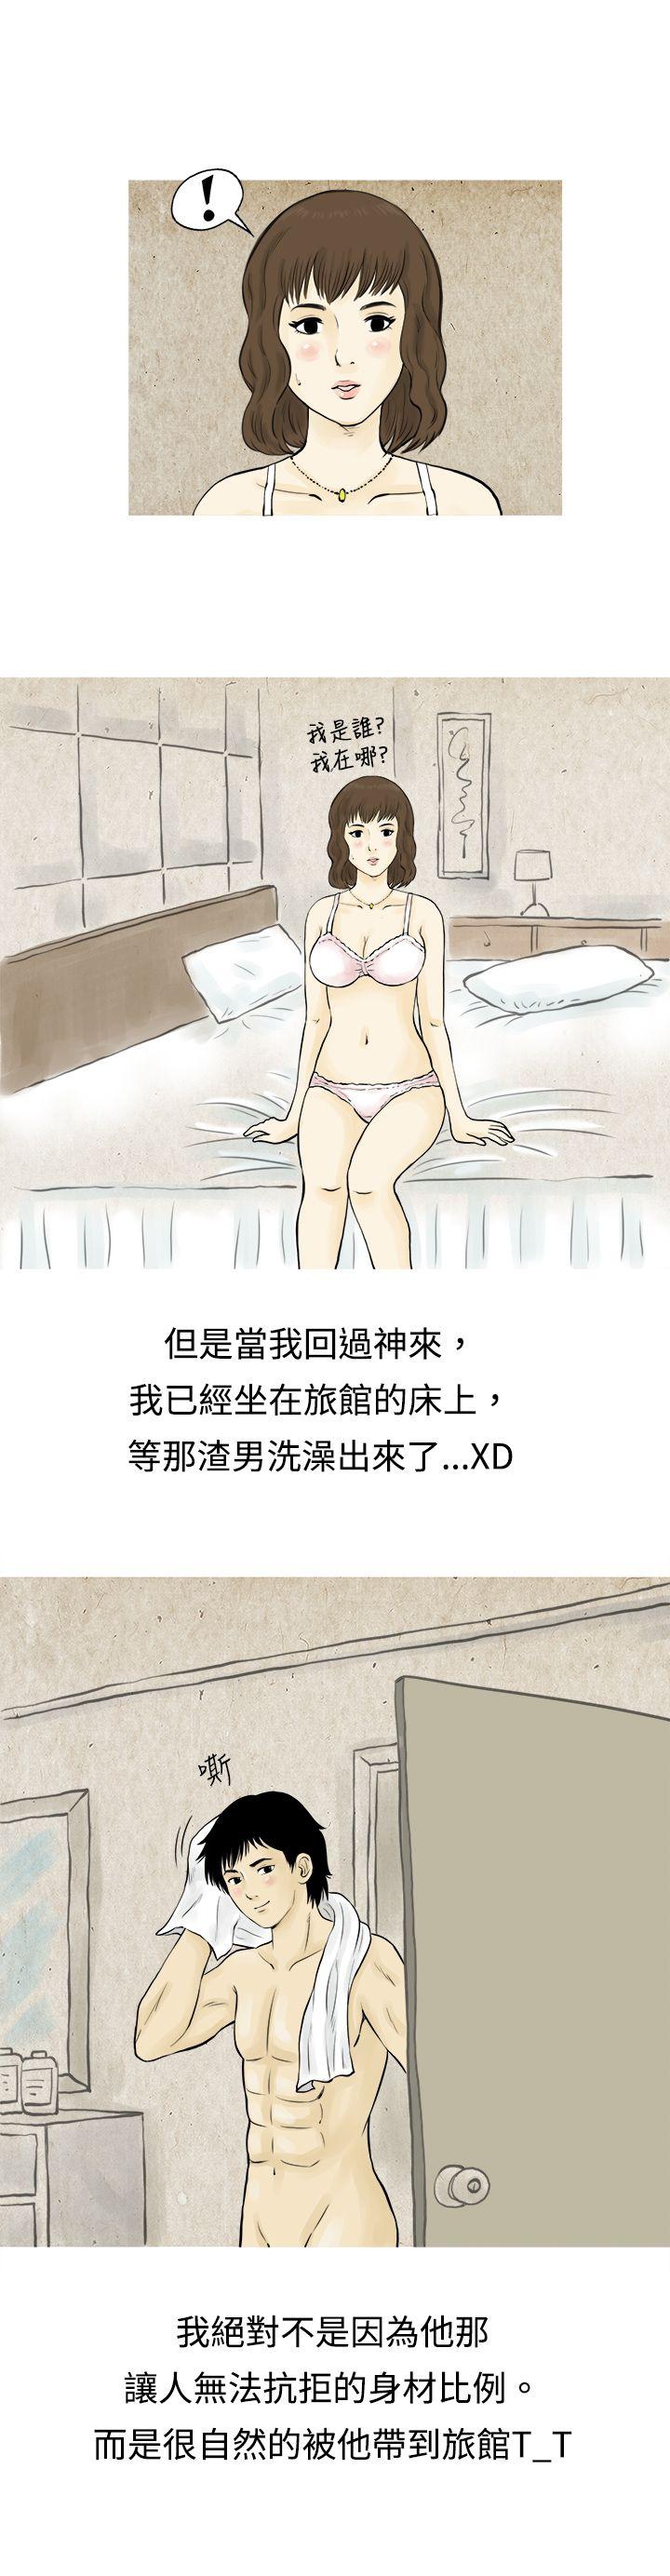 韩国污漫画 秘密Story 遇到渣男的旅馆逃亡记(上) 5